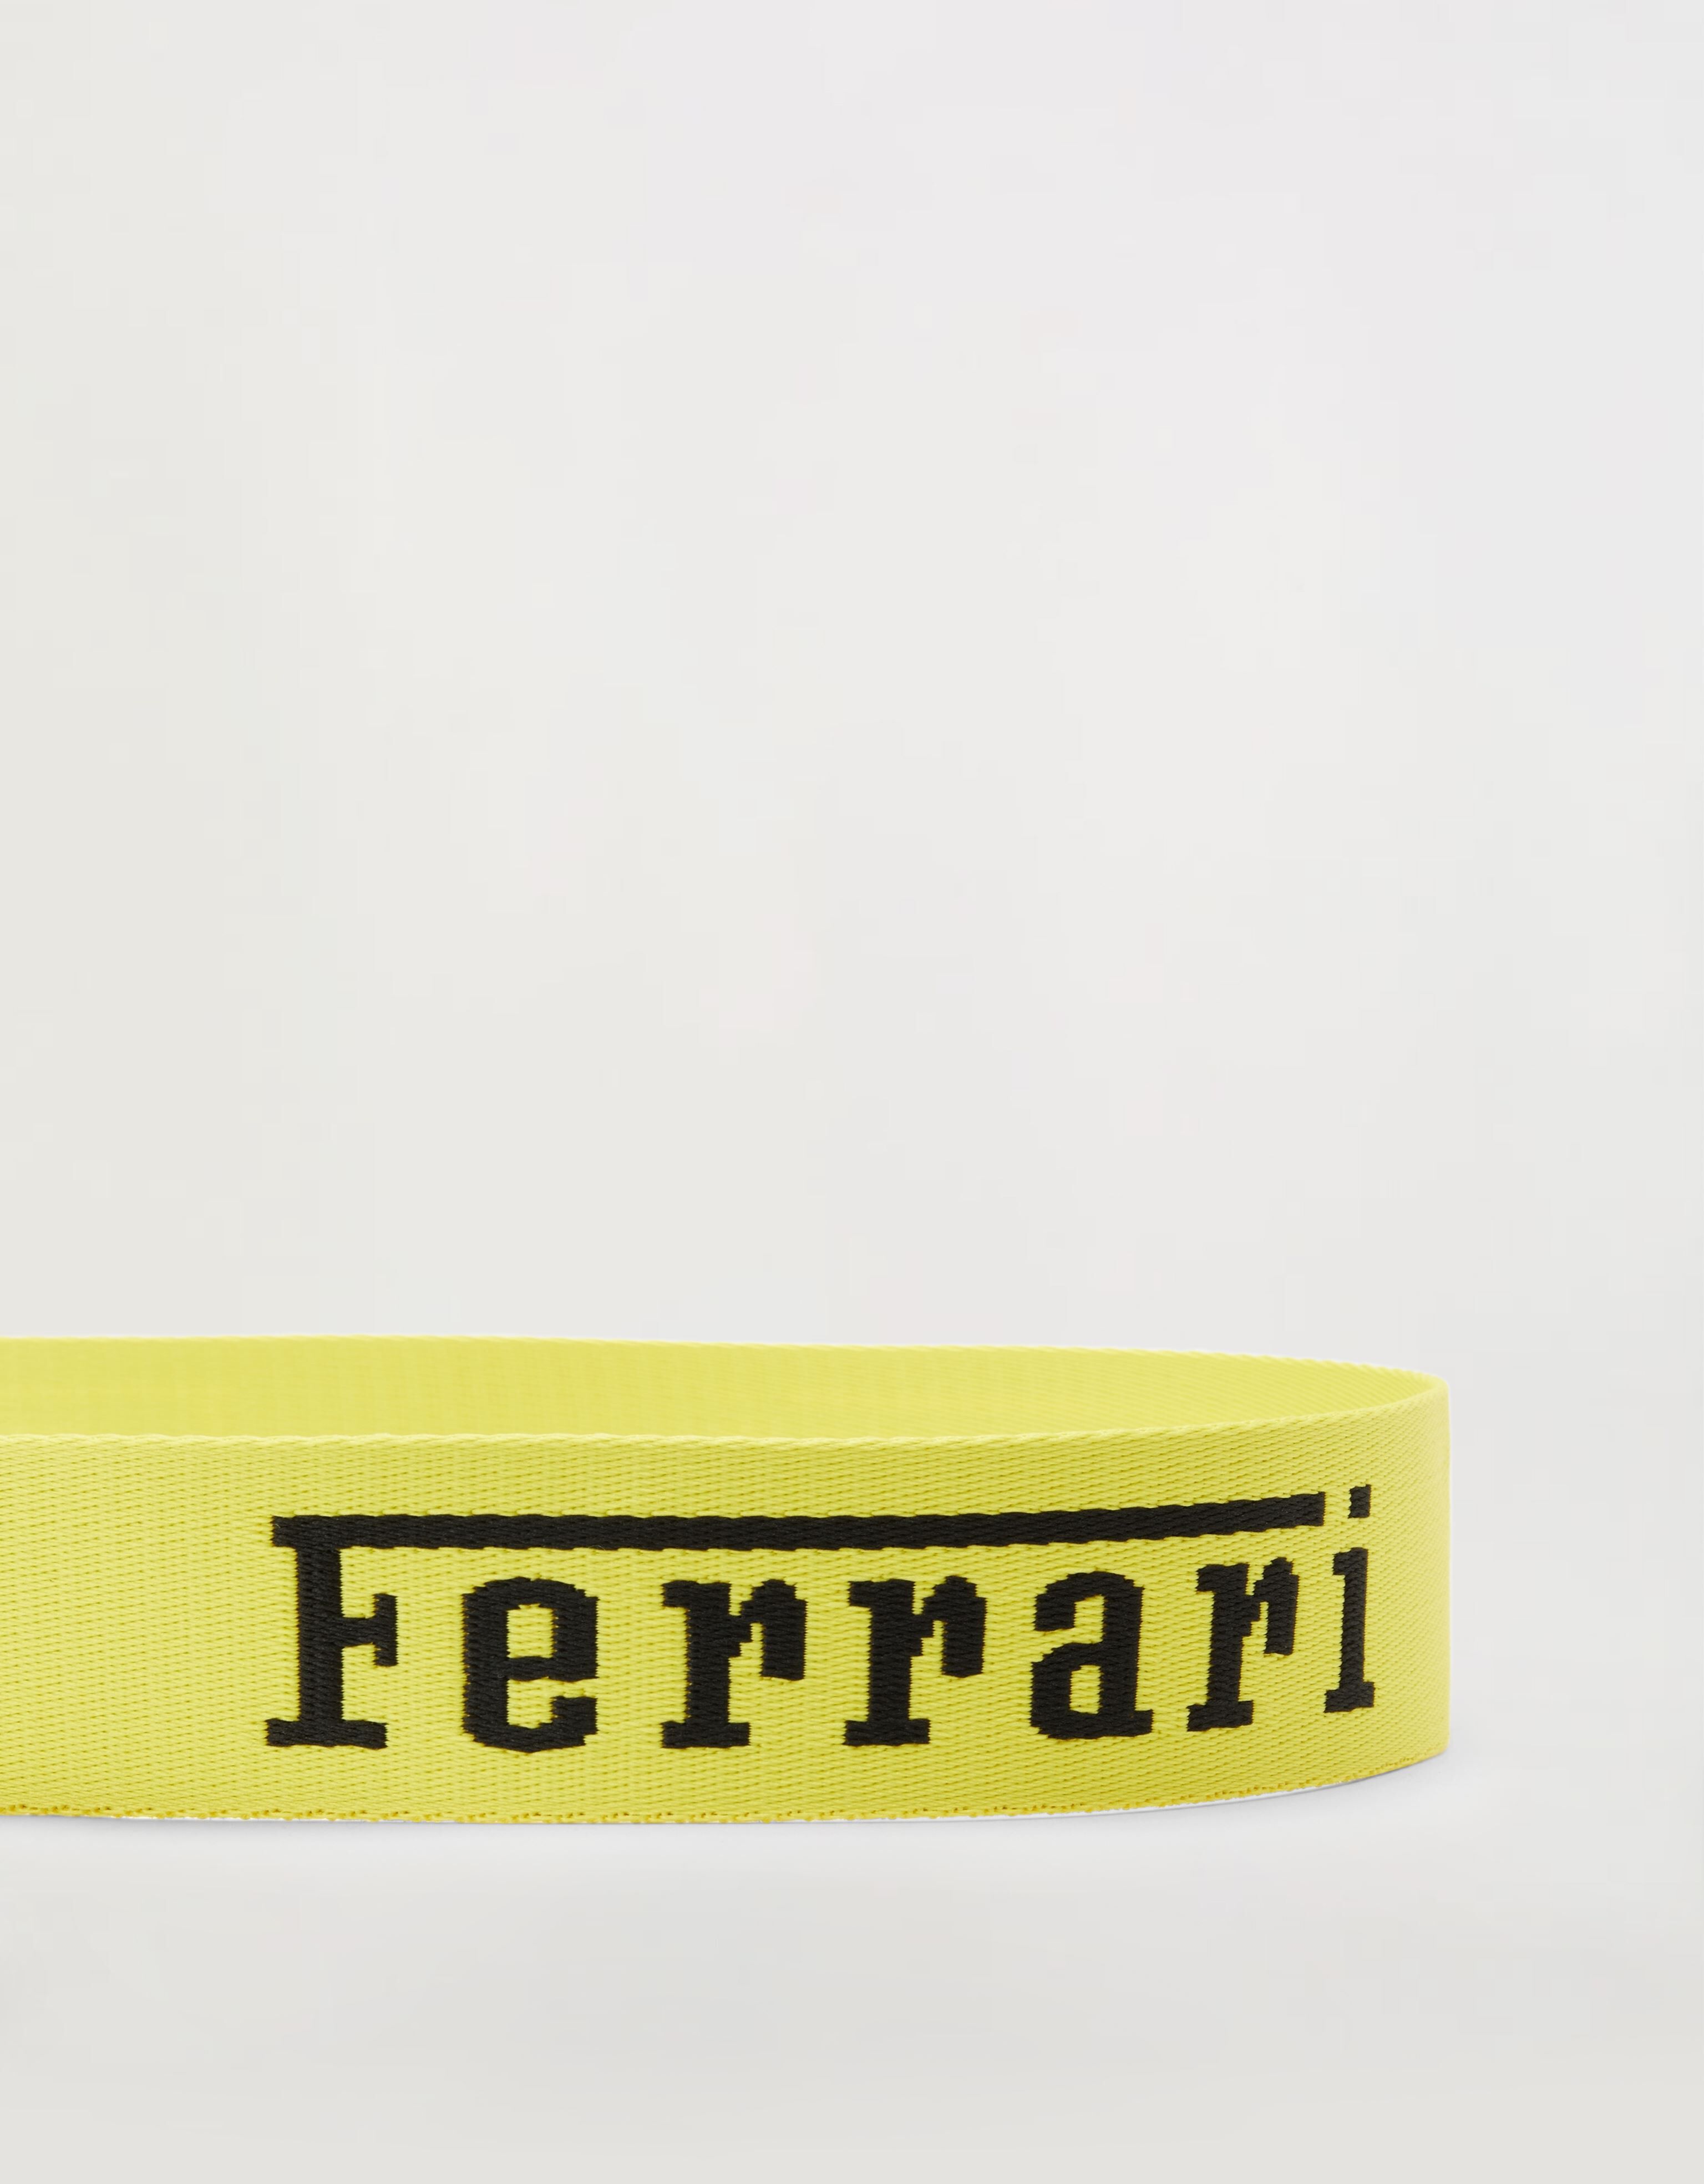 Ferrari テープベルト Ferrariロゴ入り 黄色 20017f